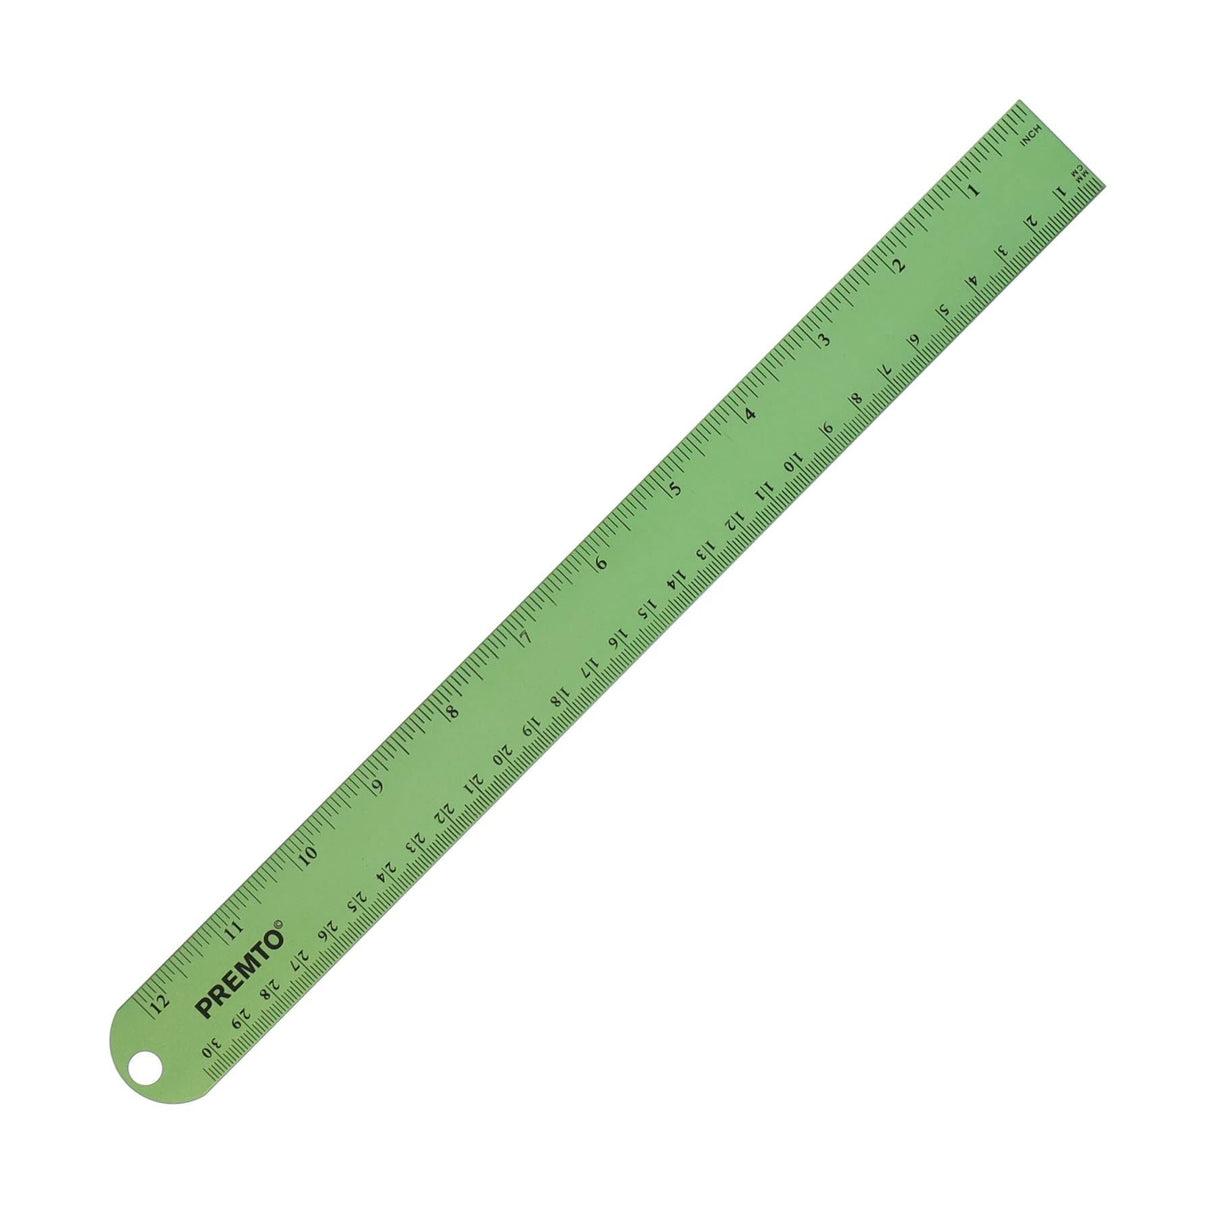 Premto S1 Aluminium Ruler 30cm - Caterpillar Green-Rulers-Premto|StationeryShop.co.uk